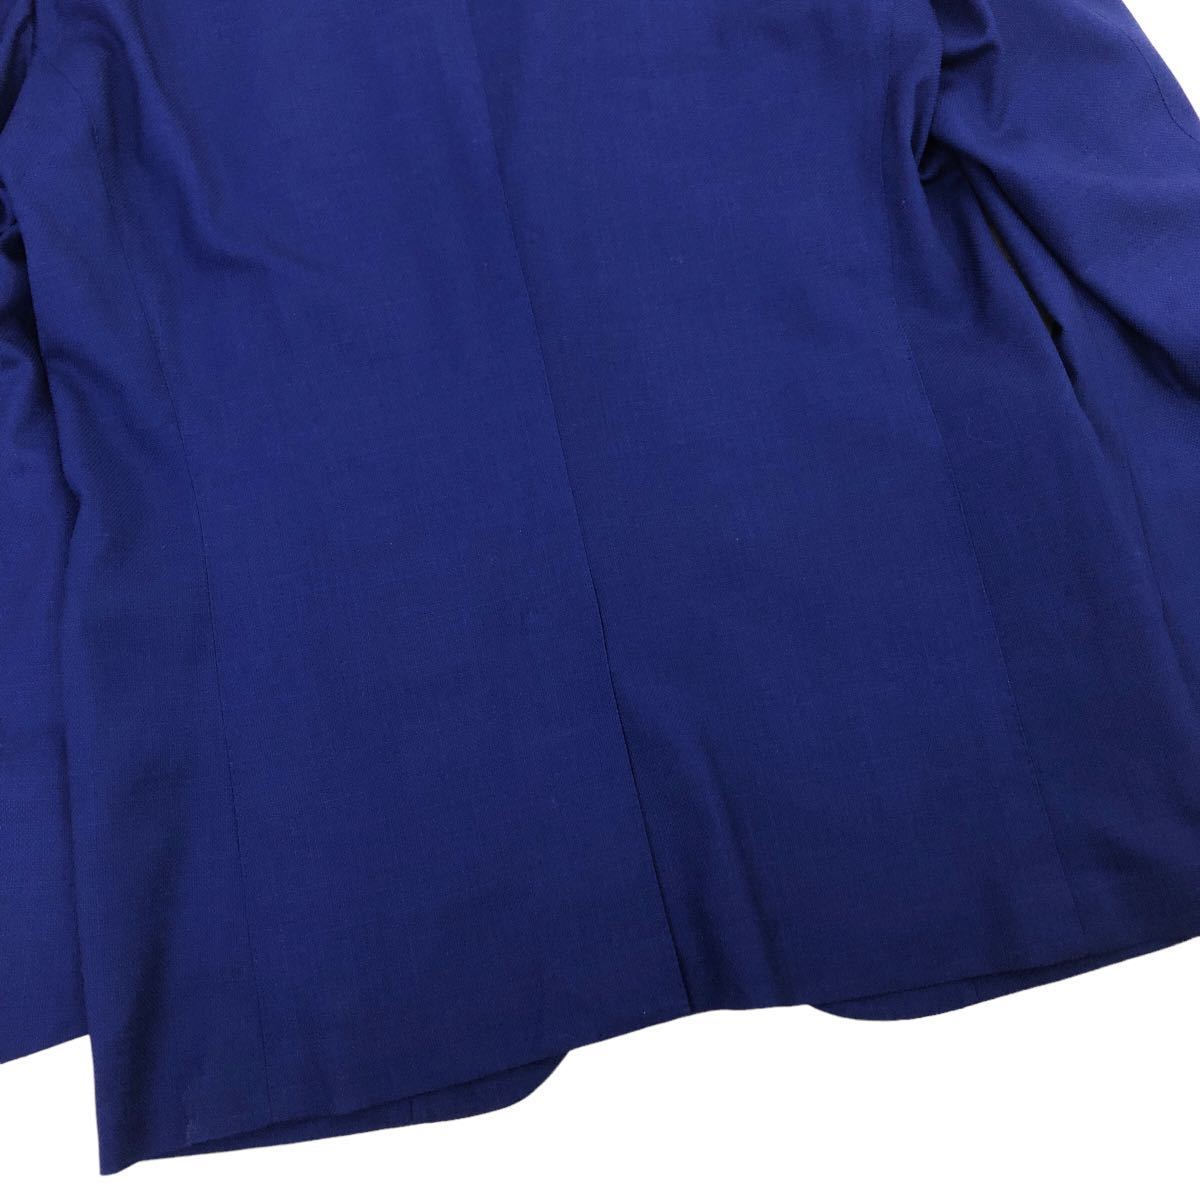 m480-22 美品 TOMORROWLANDトゥモローランド ゼニア社 COOL EFFECT テーラード ジャケット 上着 羽織り トップス ブルー メンズ 50_画像7